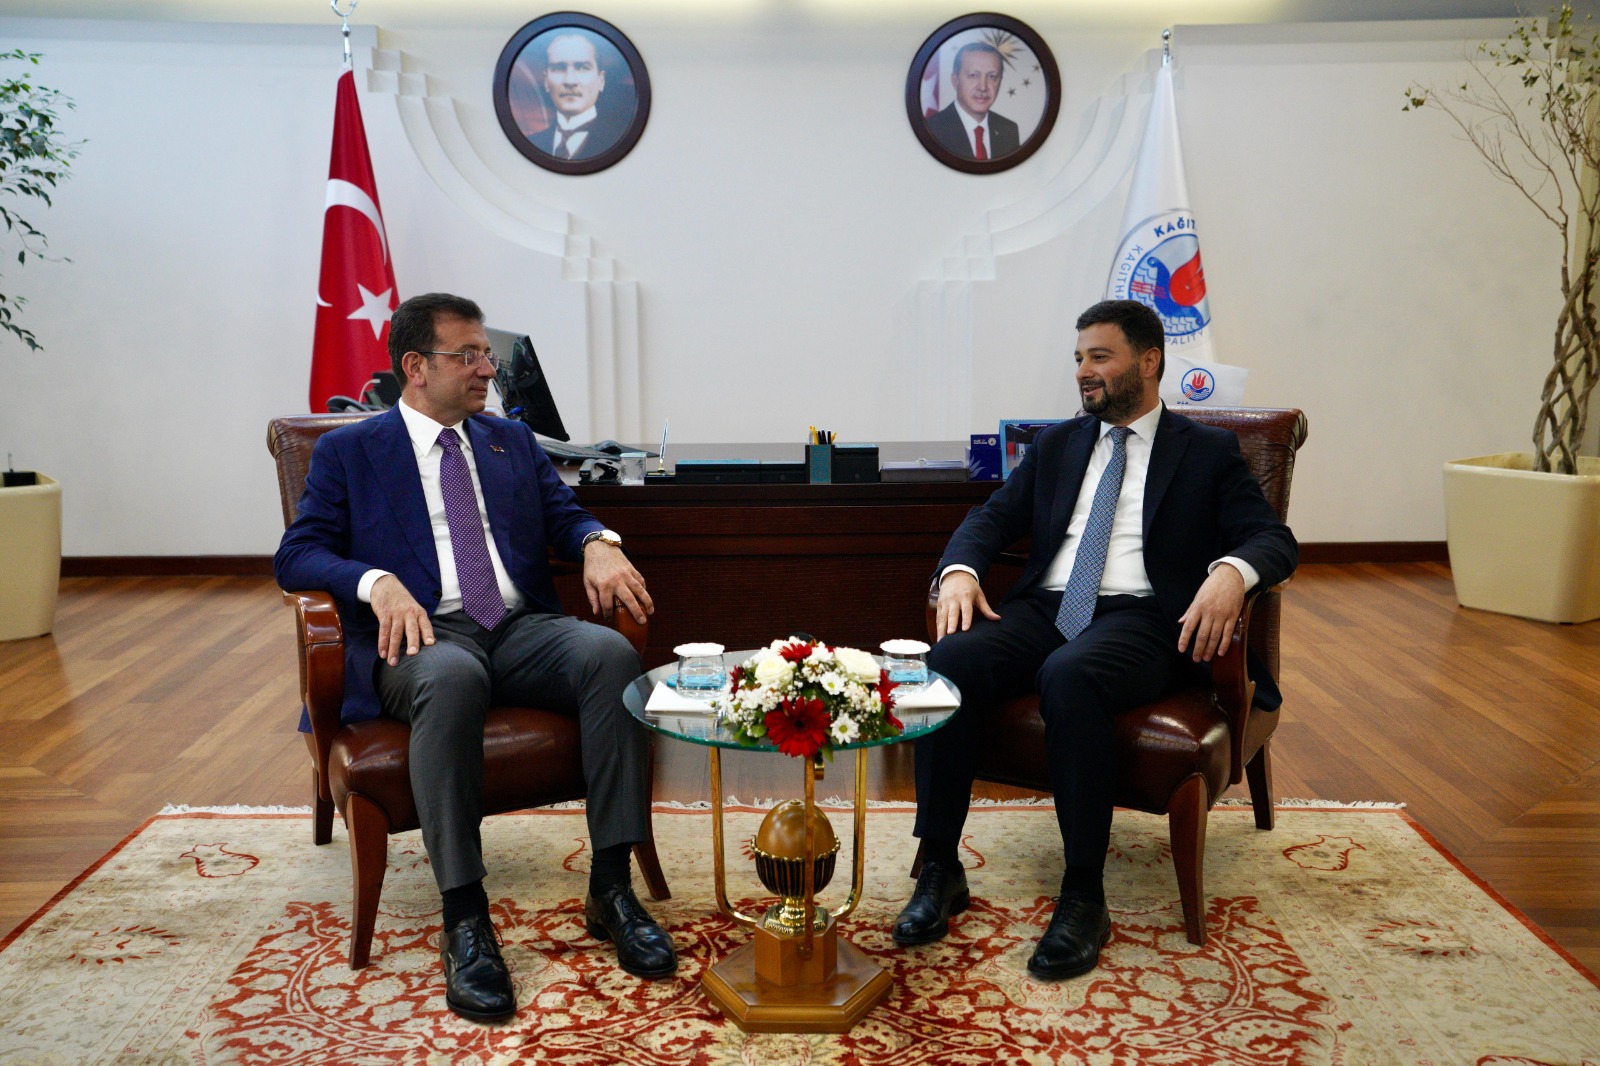 İmamoğlu, Kağıthane Belediye Başkanı Öztekin ile görüştü